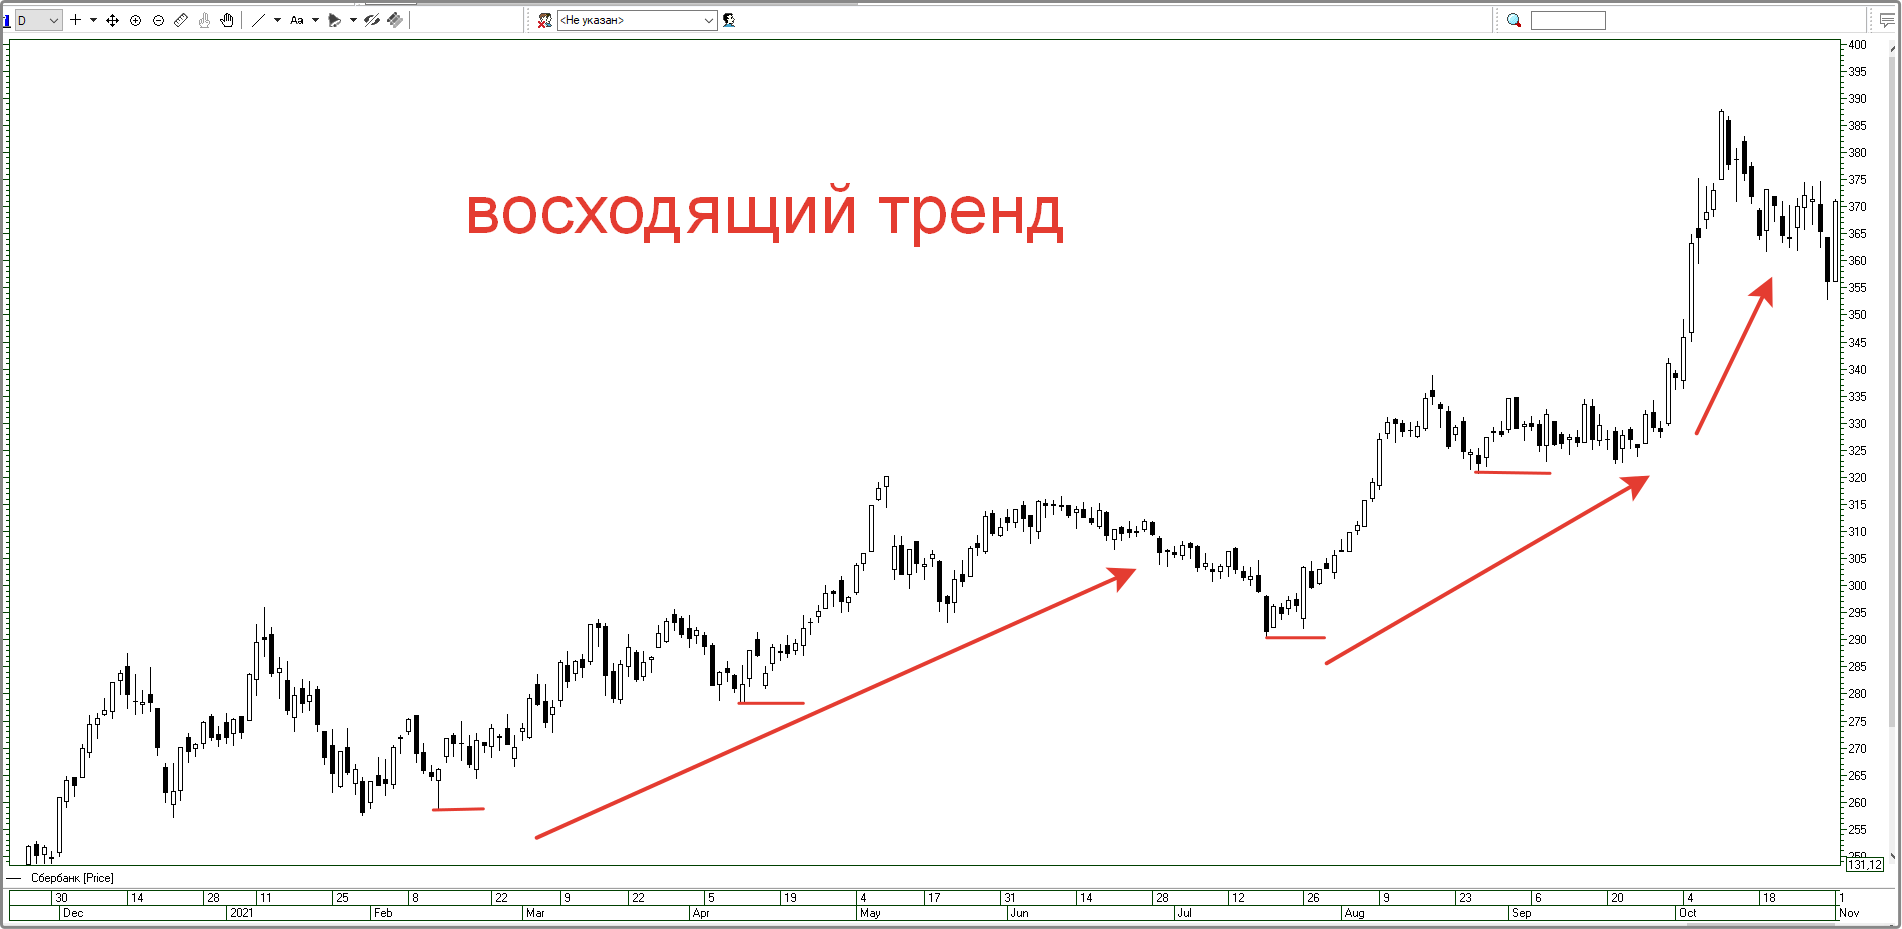 Как читать графики на бирже для новичка-пошаговая инструкция на примере графиков Московской фондовой биржи.